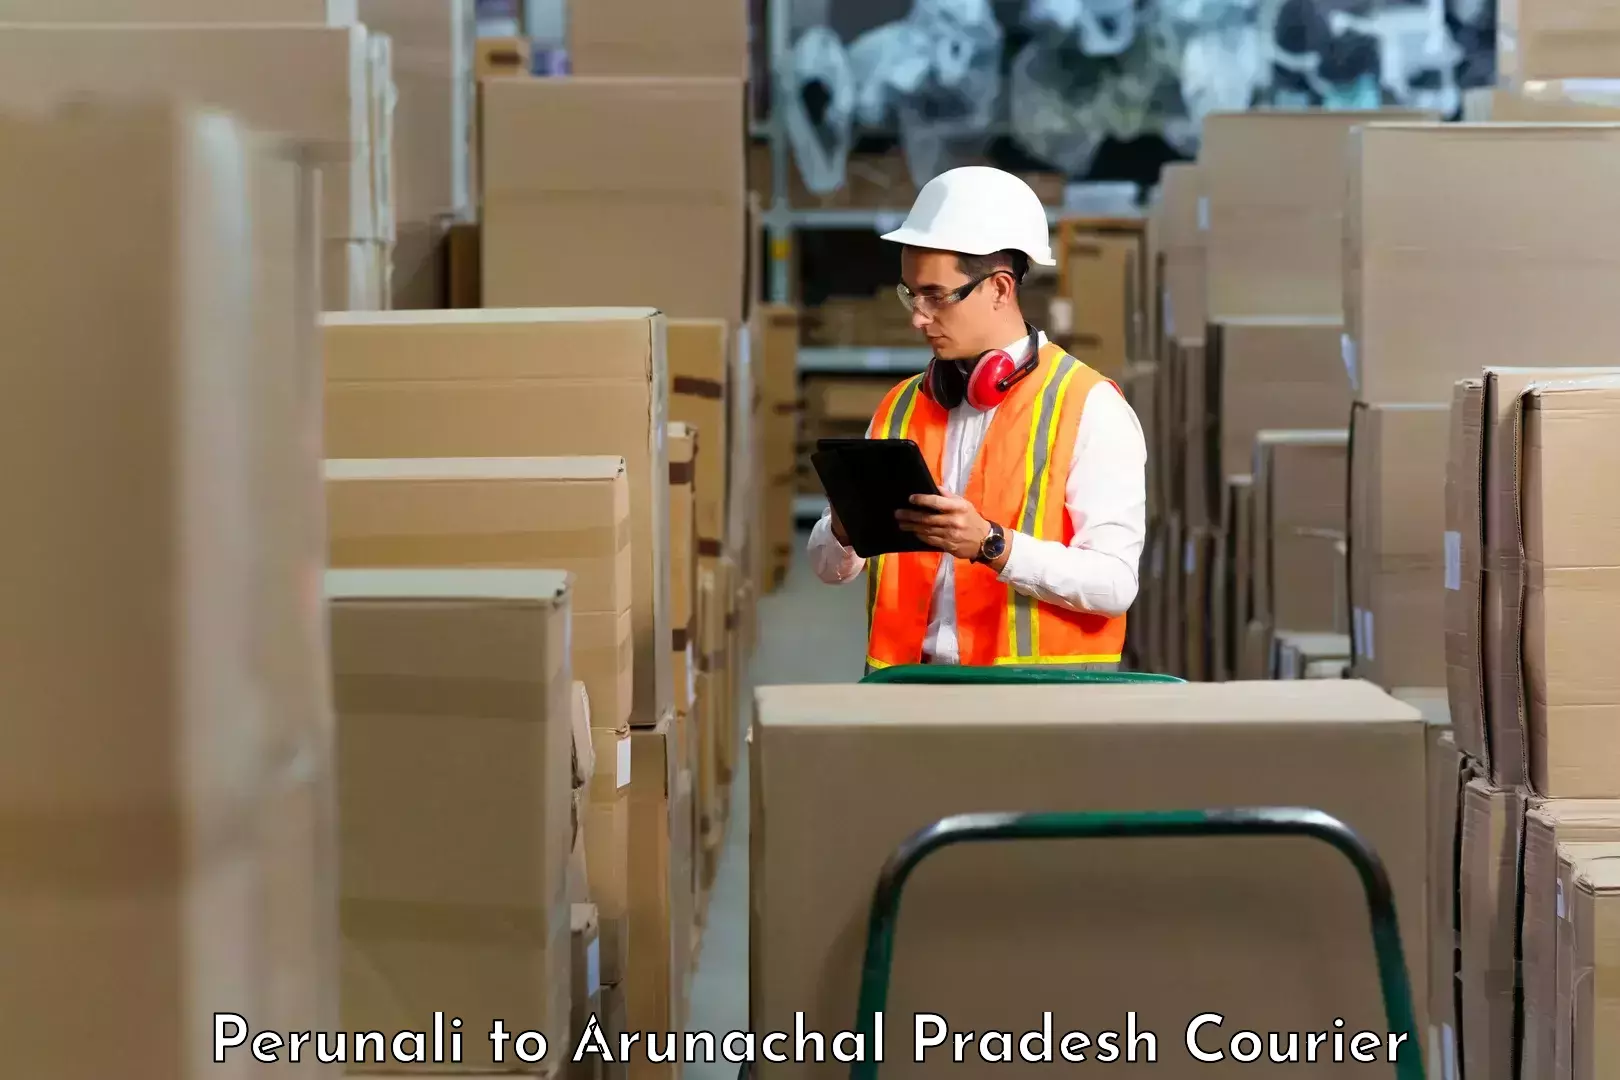 Package tracking in Perunali to Arunachal Pradesh